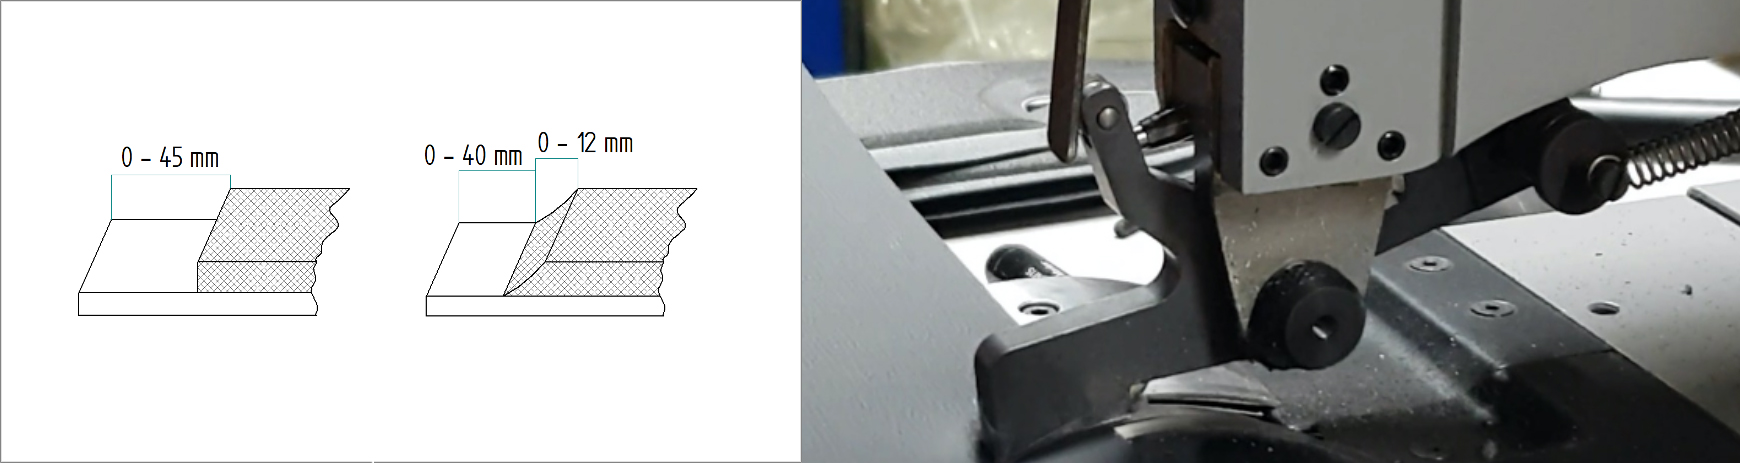 Esempi di scarnitura per interni auto - SX Dettaglio piedino scarnitrice elettronica - DX